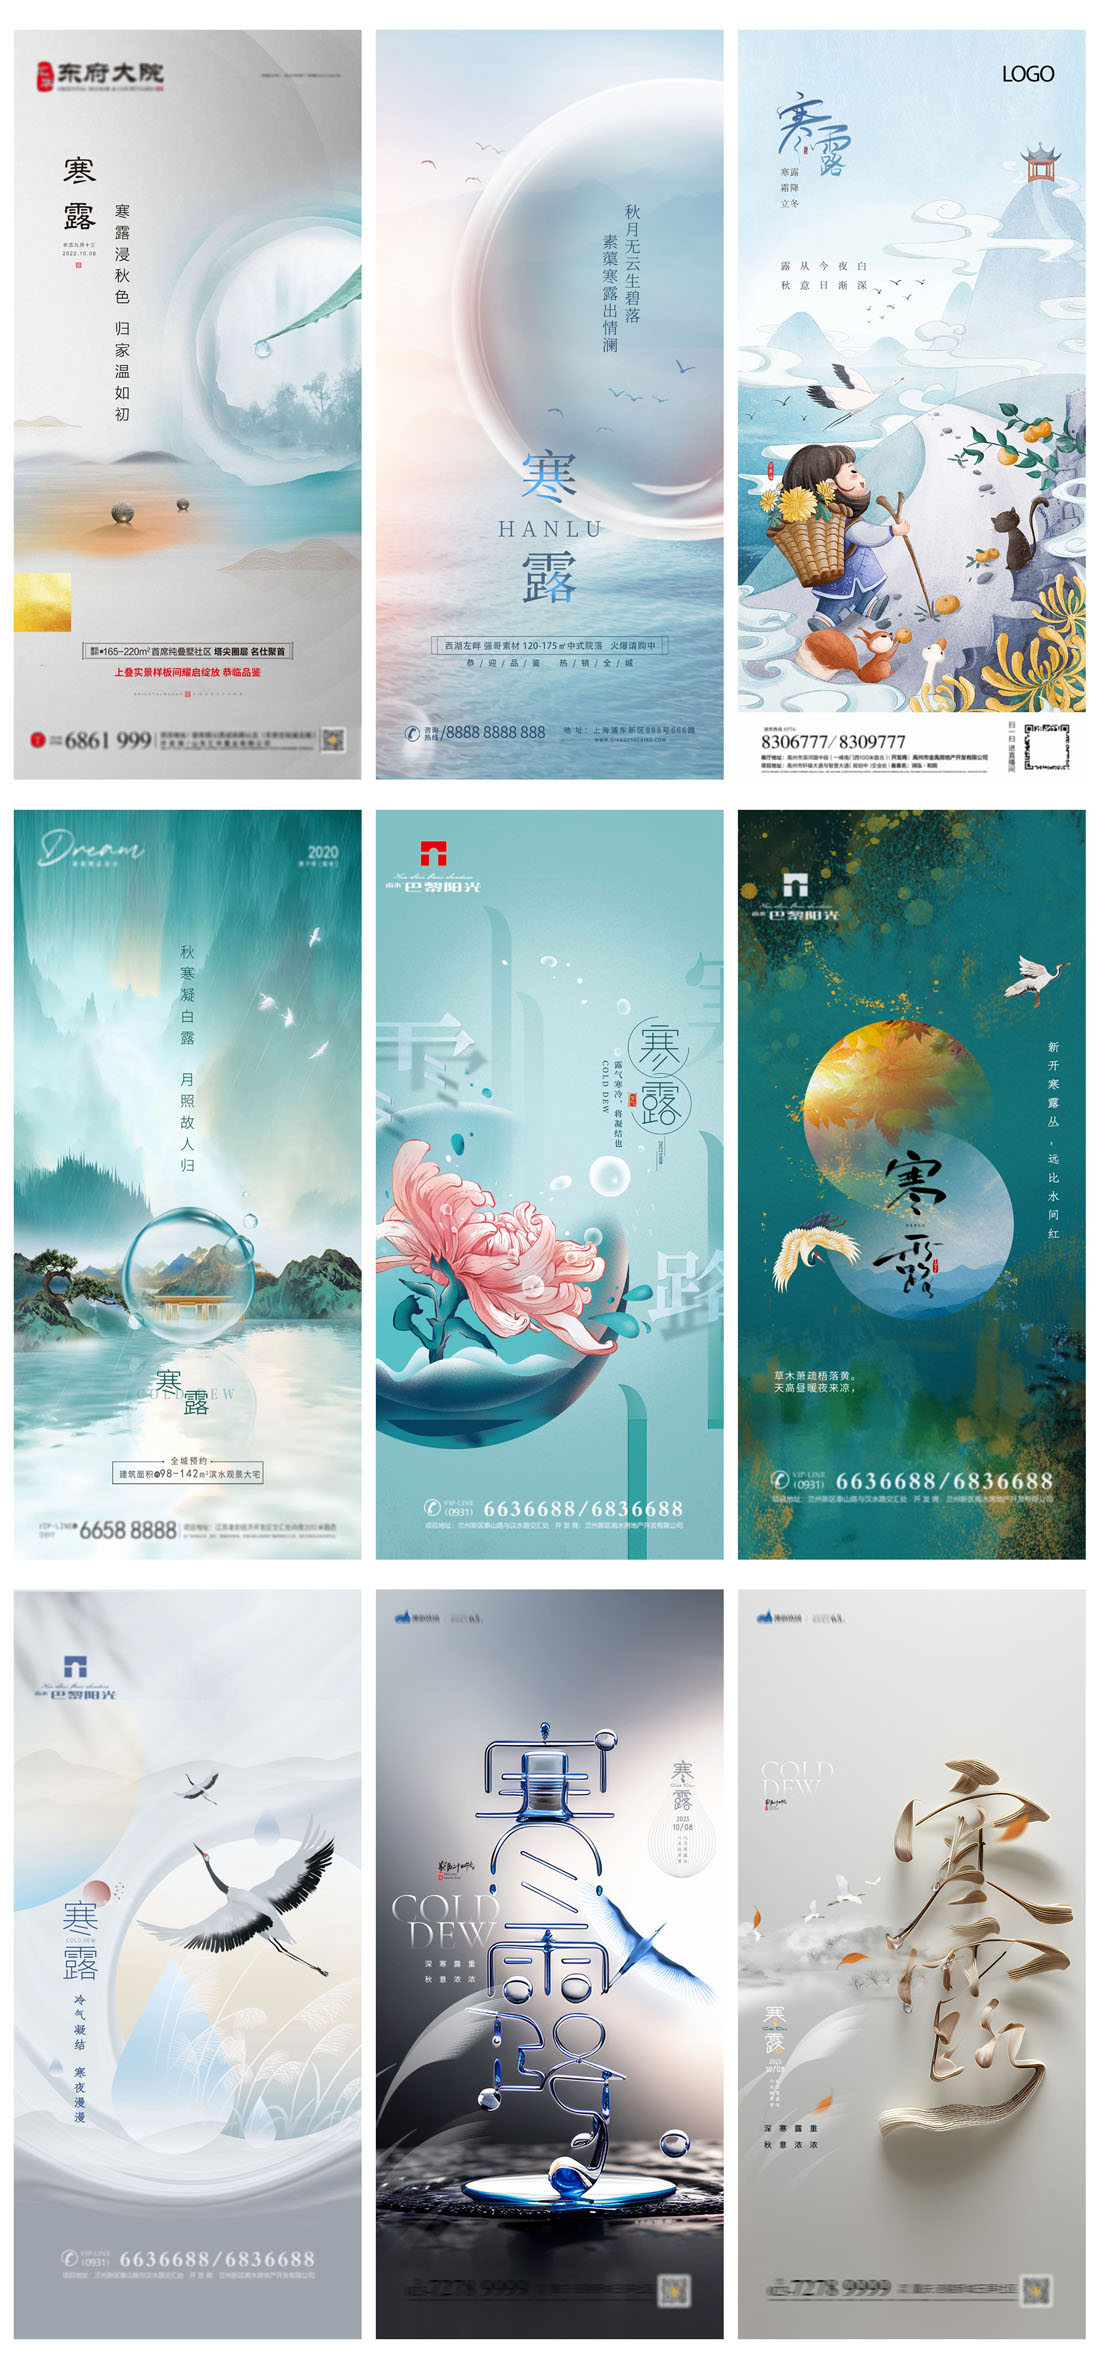 94款中国传统二十四节气之寒露节日海报PSD模板 设计素材 第19张